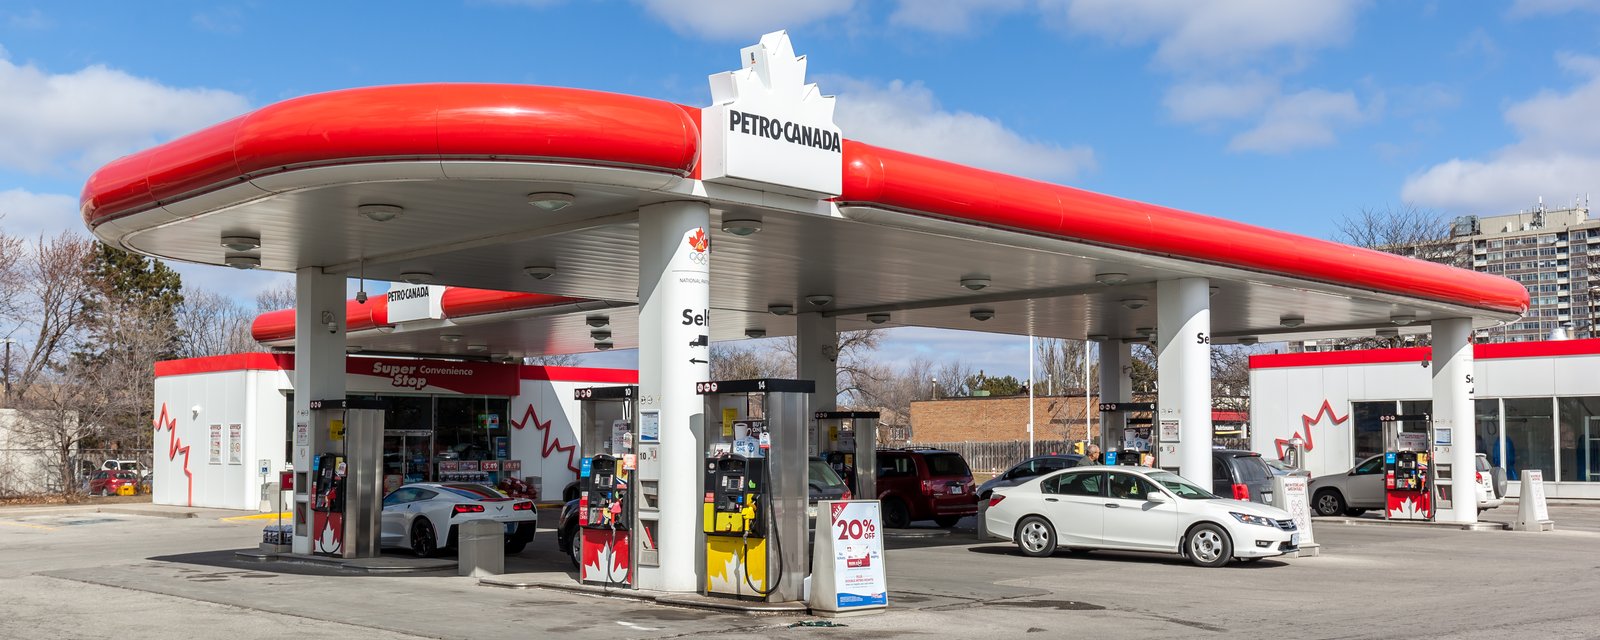 Le prix de l'essence au Québec atteint son plus bas prix depuis février